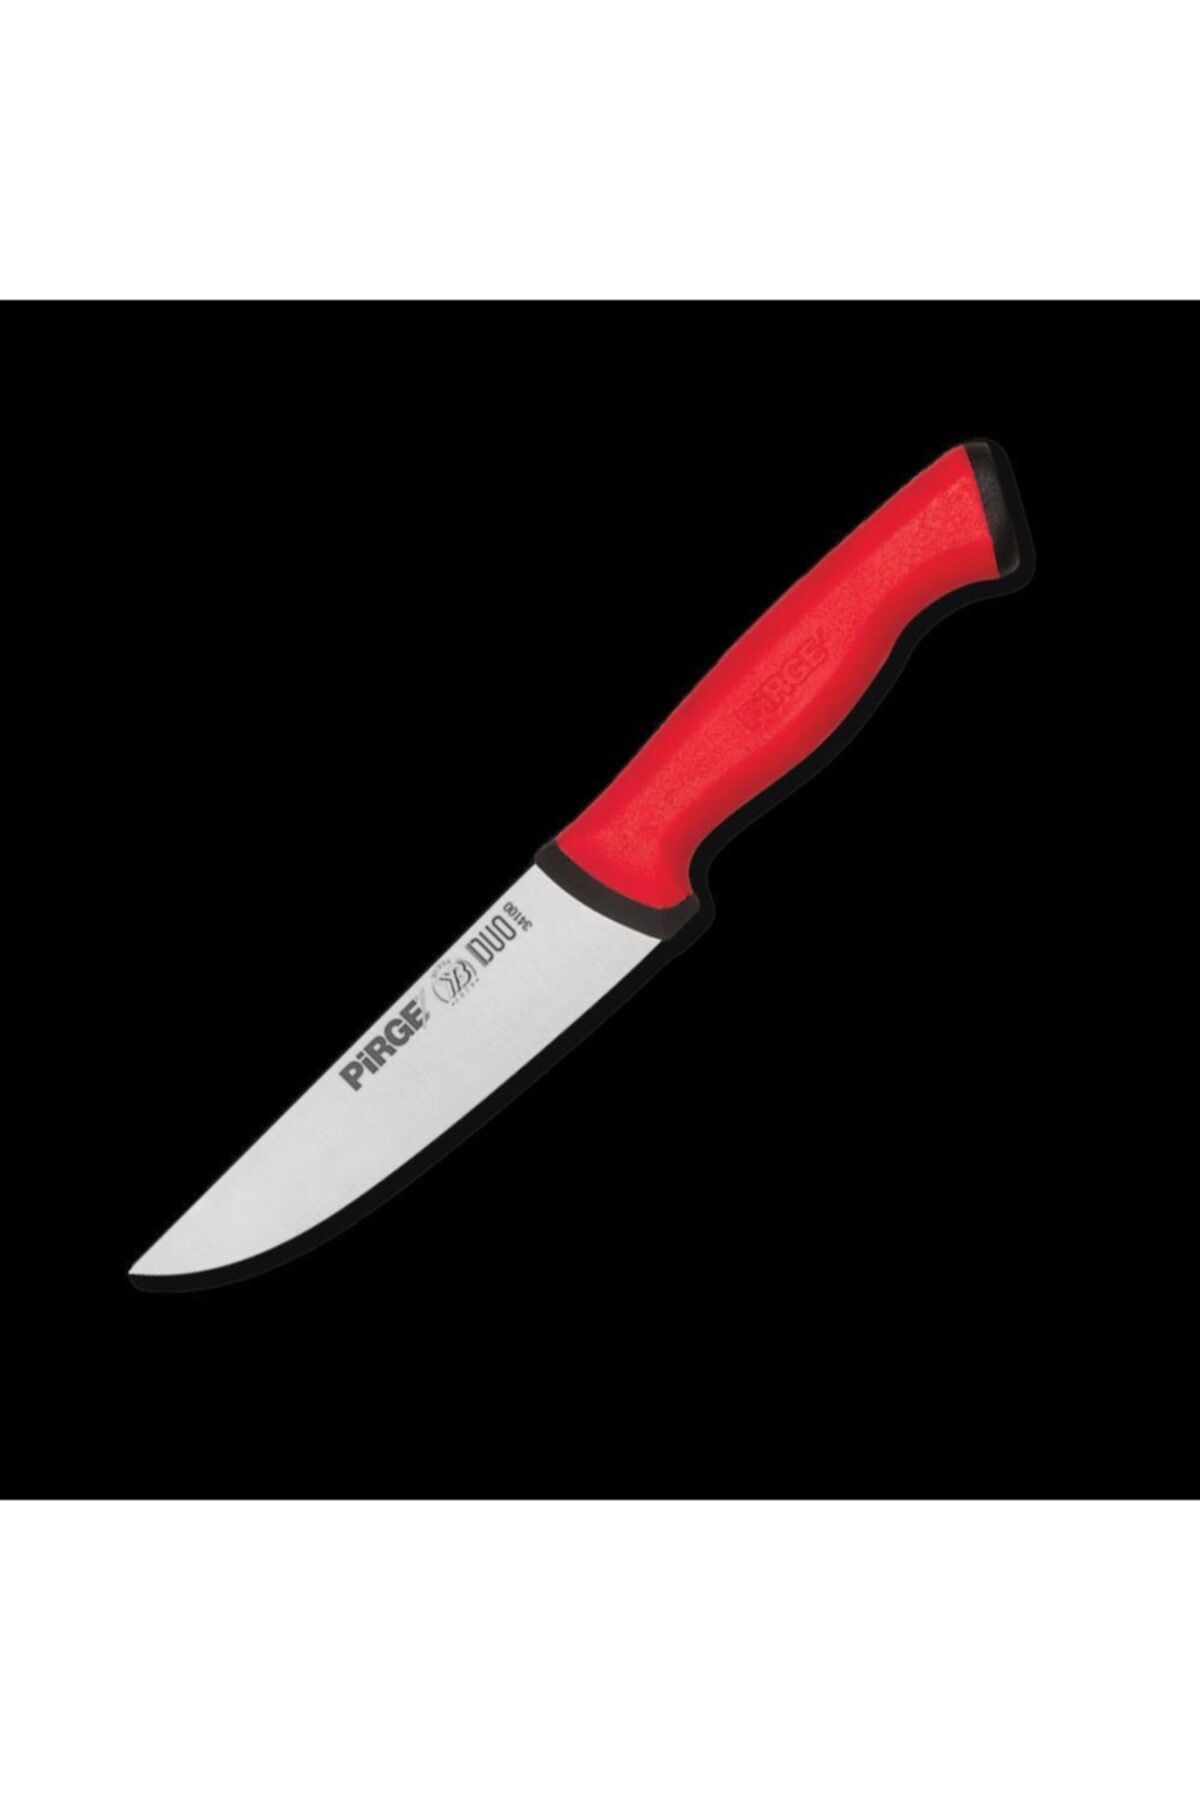 3M Pirge Duo Mutfak Bıçağı No 3 Bıçak Ağzı 17 Cm Boy 32 Cm